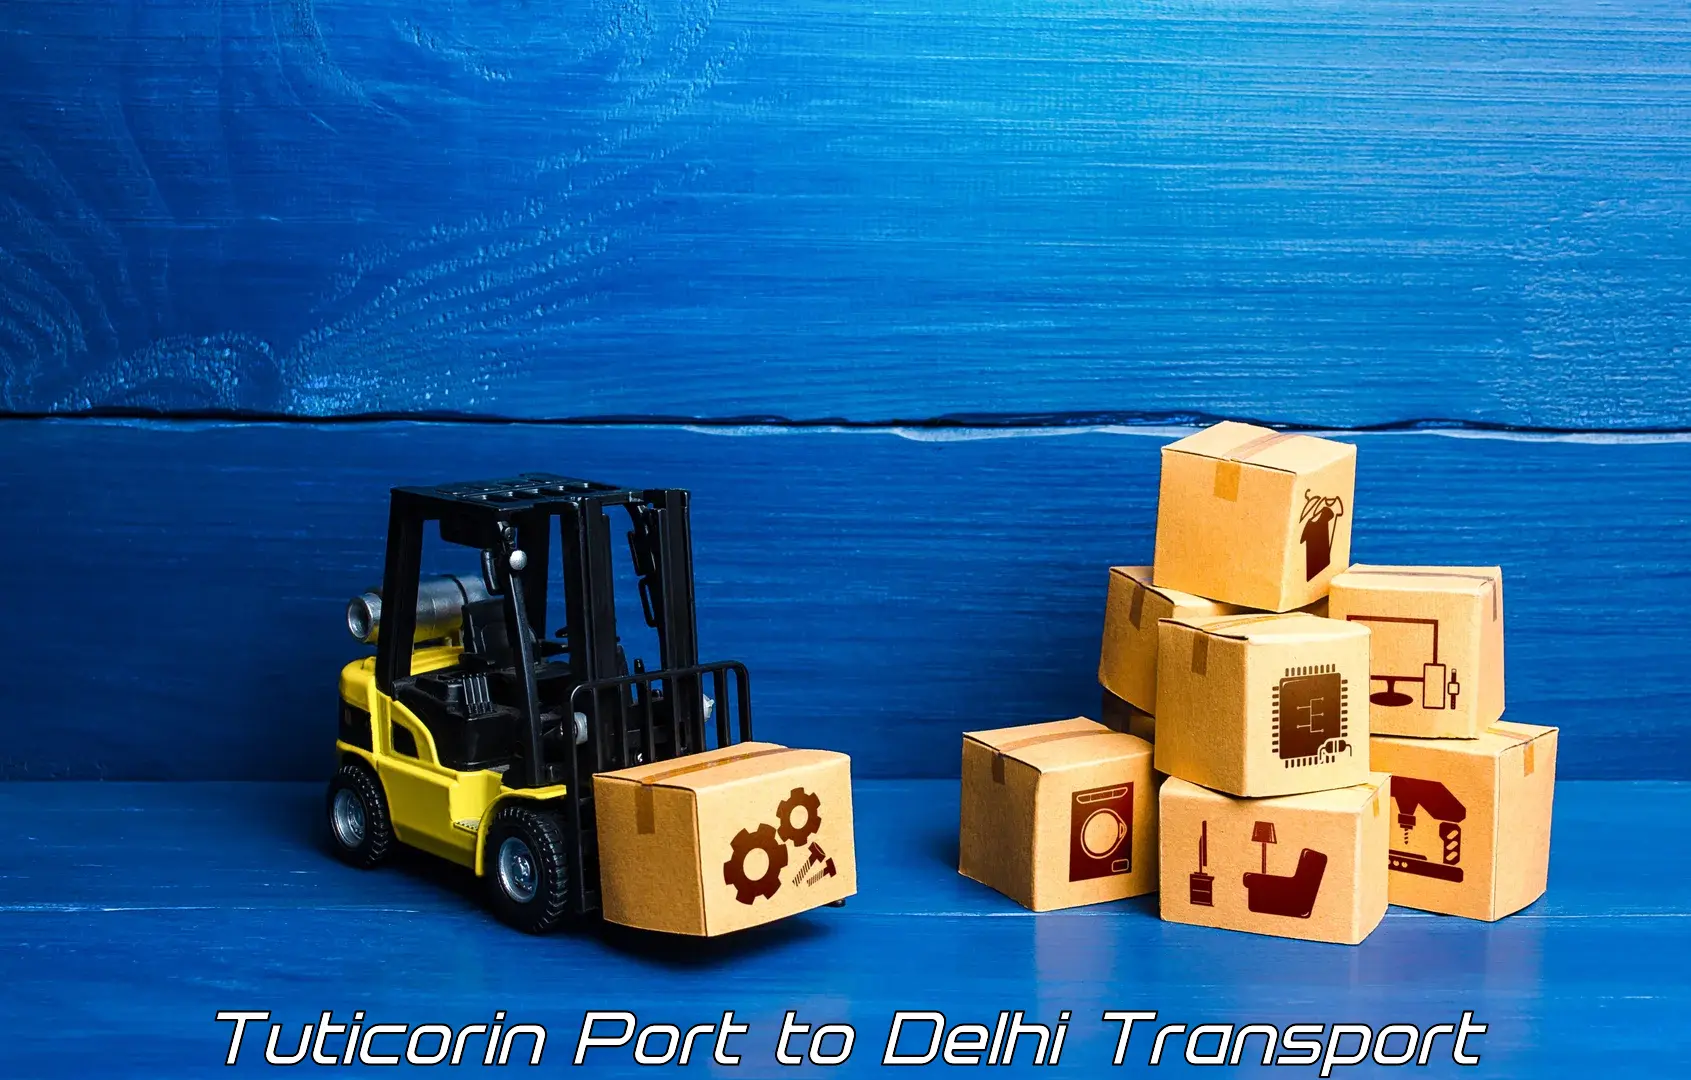 Furniture transport service Tuticorin Port to Delhi